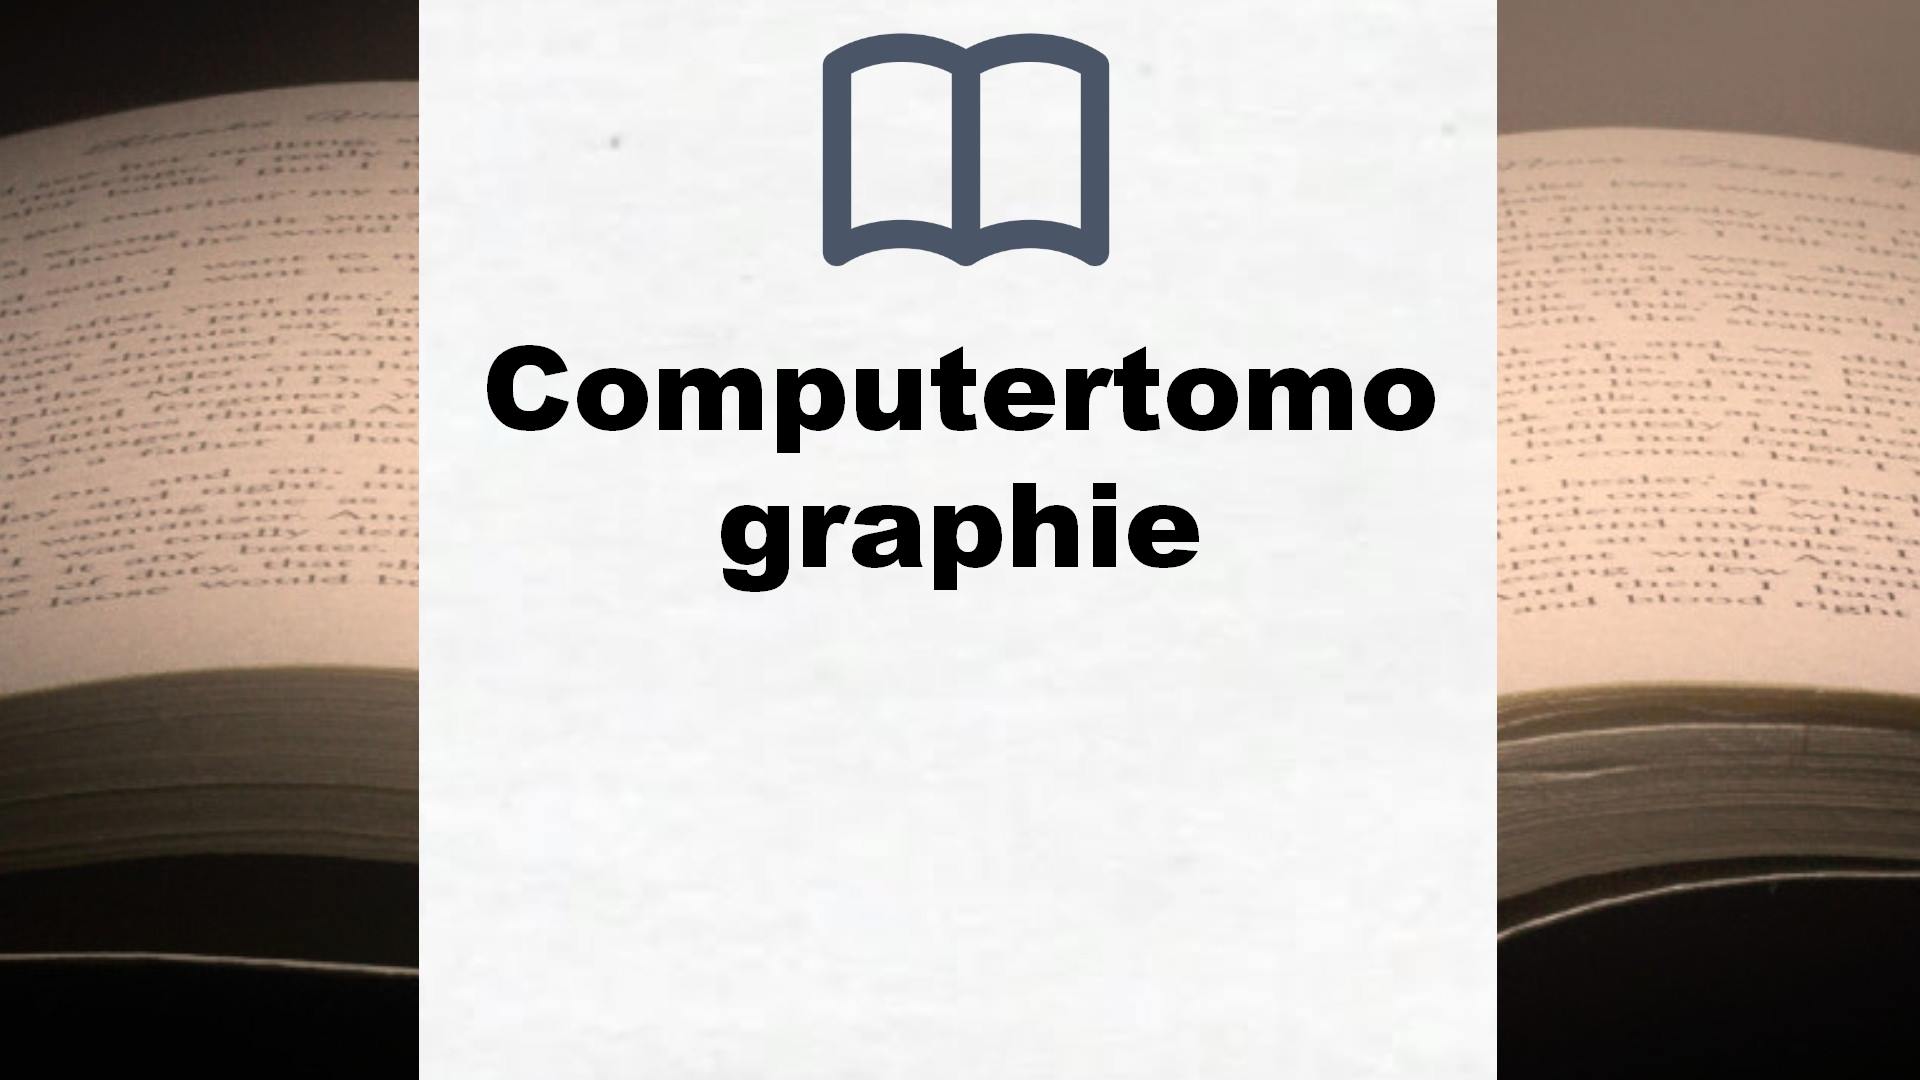 Bücher über Computertomographie